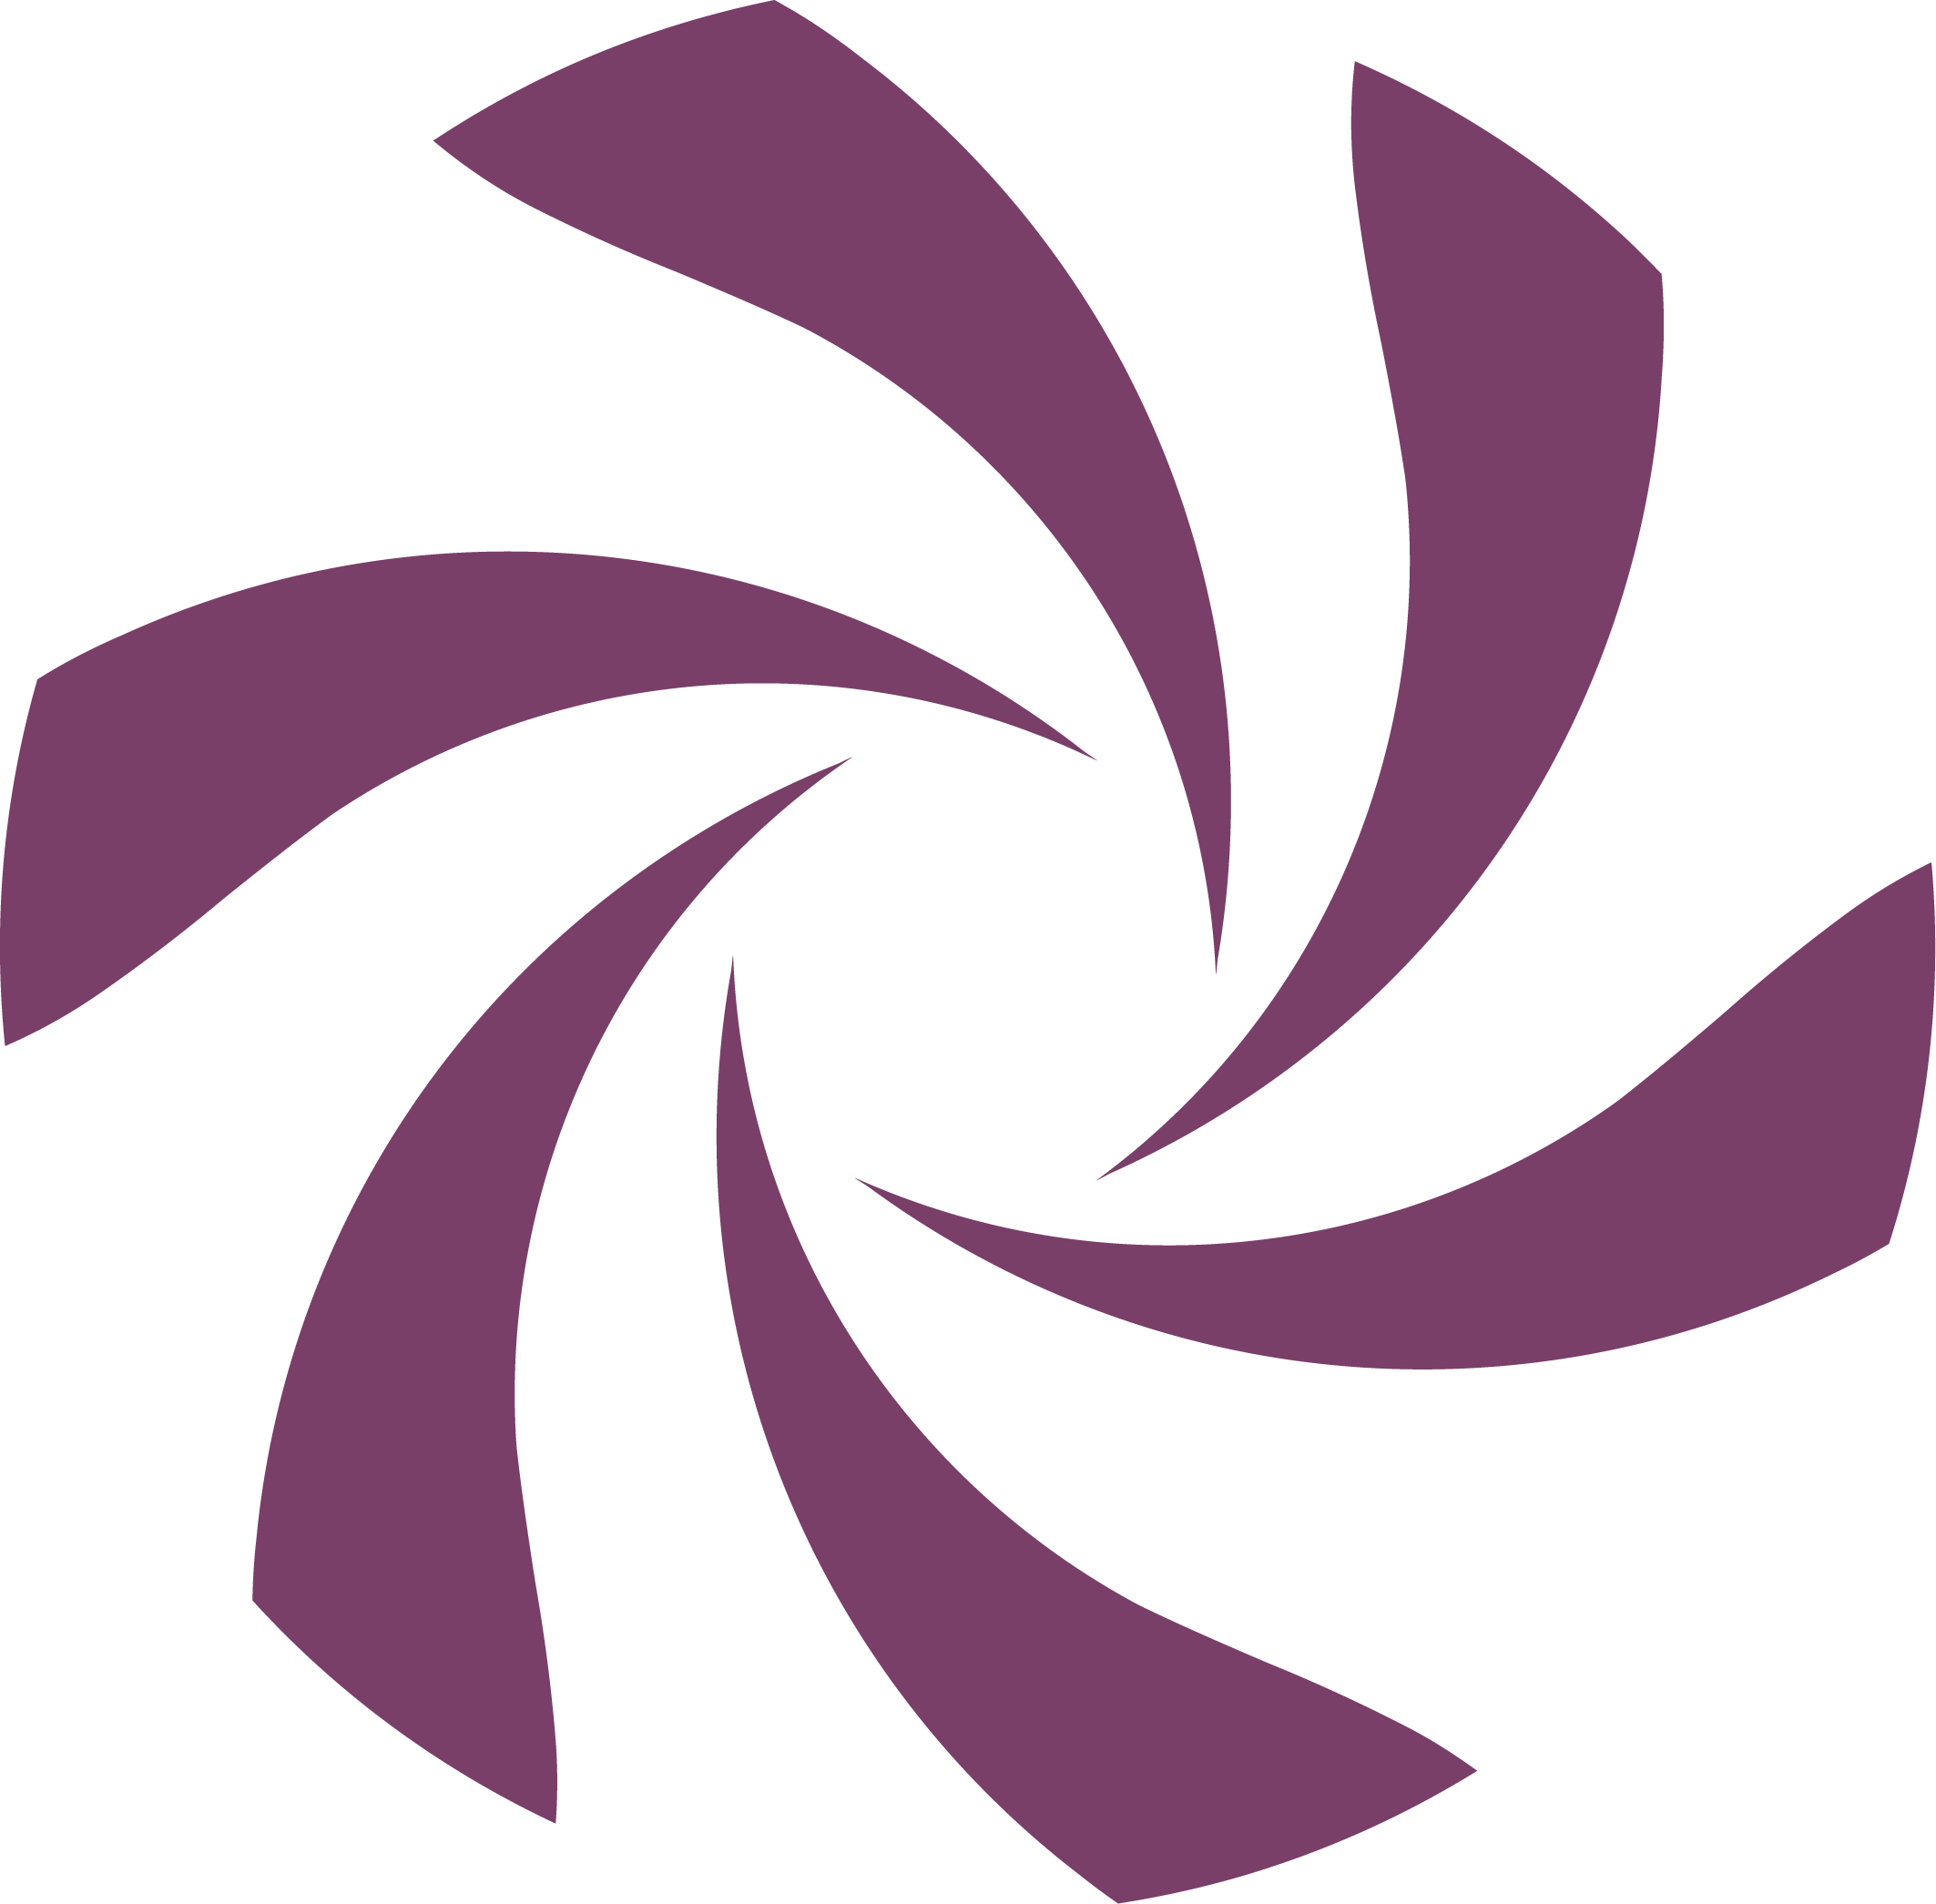 maviemeilleure.com logo for Stripe